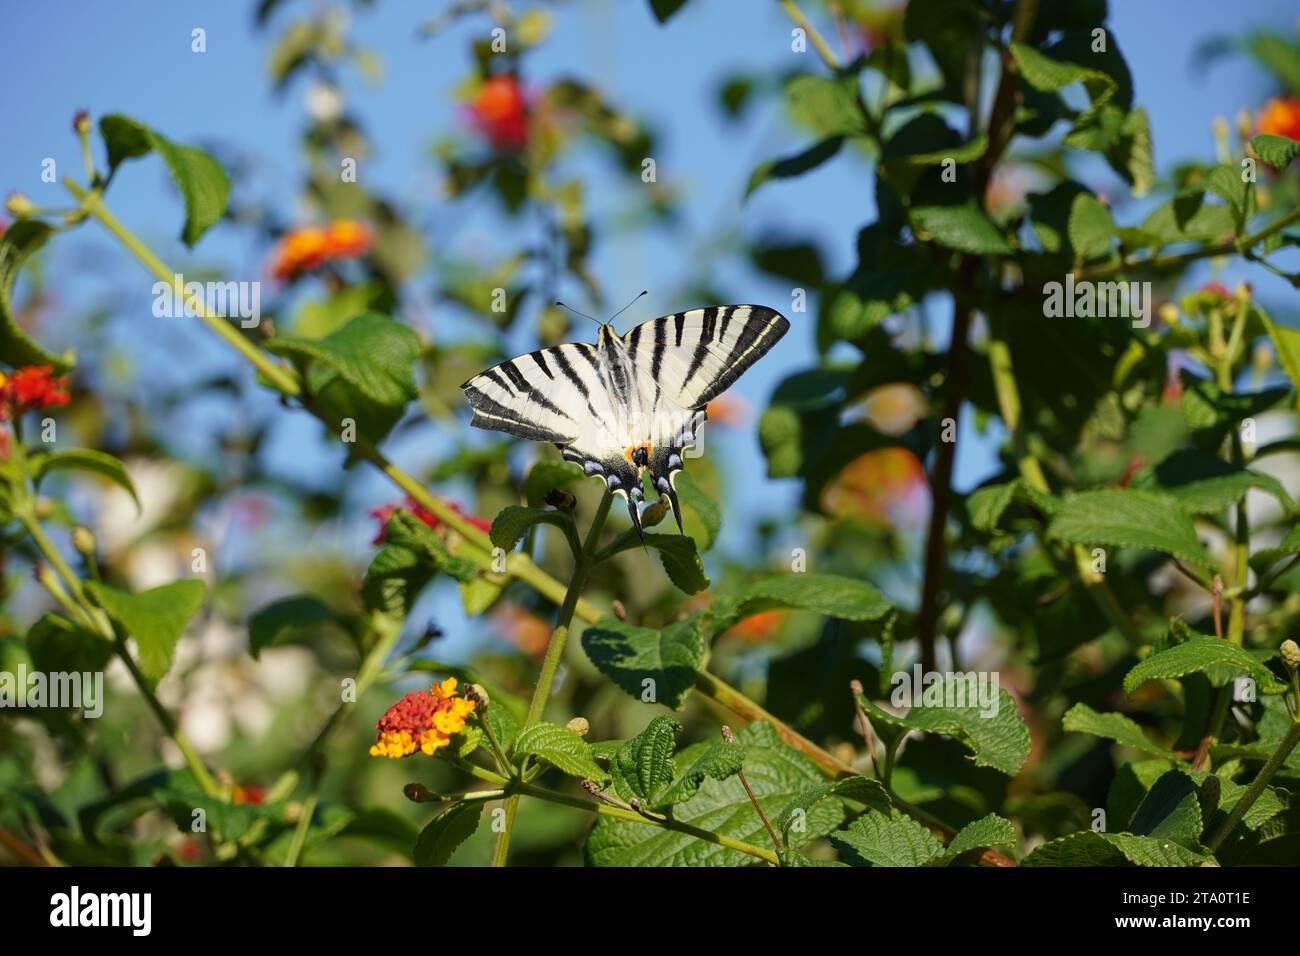 Ein seltener Schwalbenschwanz oder Iphiclides podalirius-Schmetterling auf lantana camara-Blüten in Athen, Griechenland Stockfoto